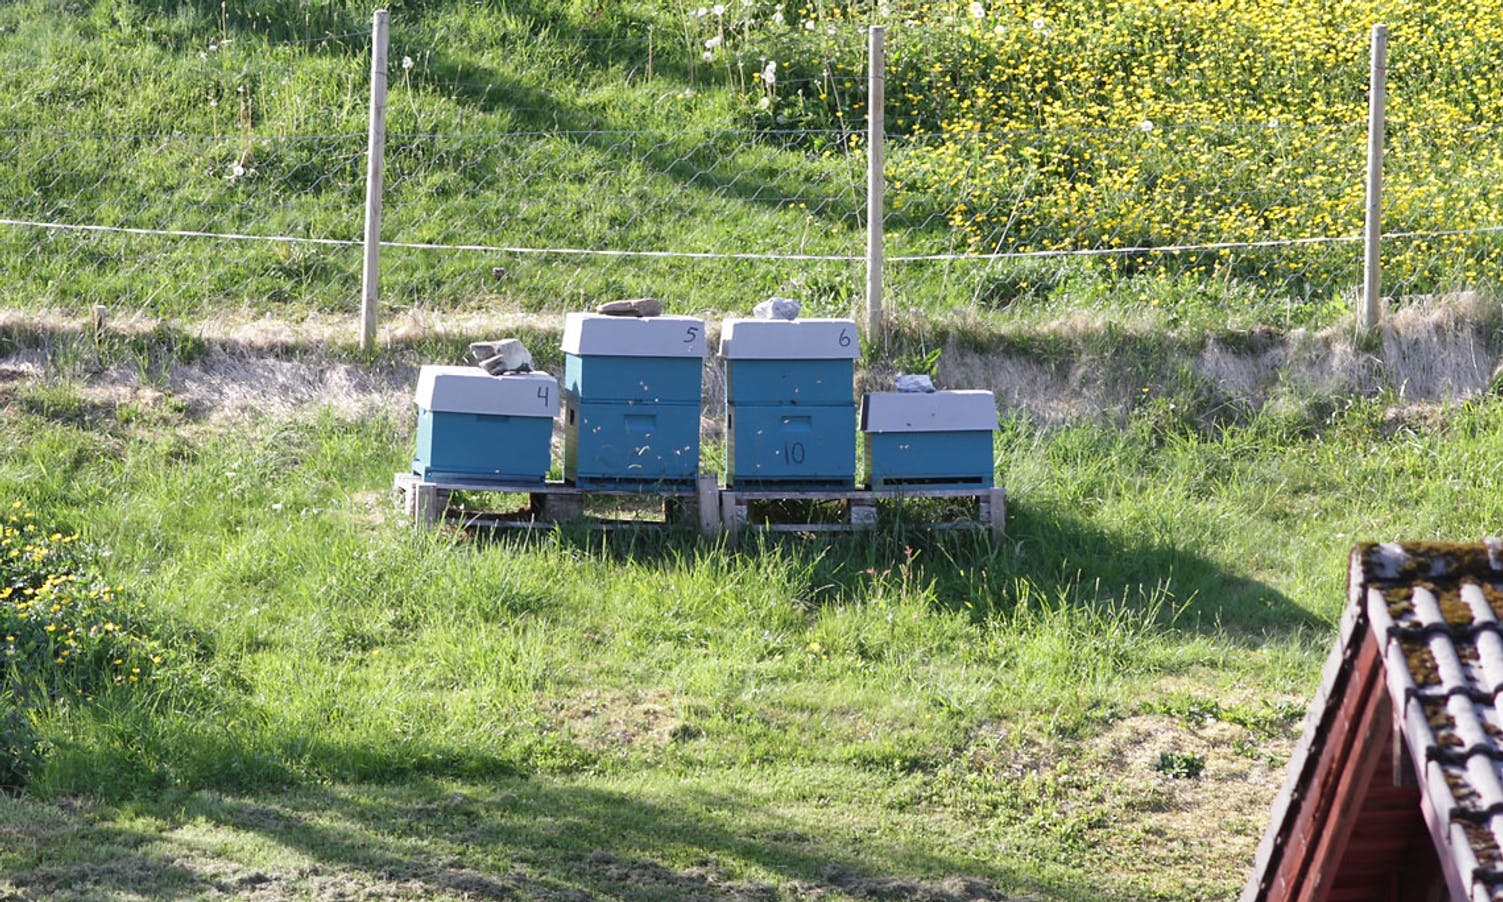 Frå før har Tonje bier og geiter. (Foto: KVB)